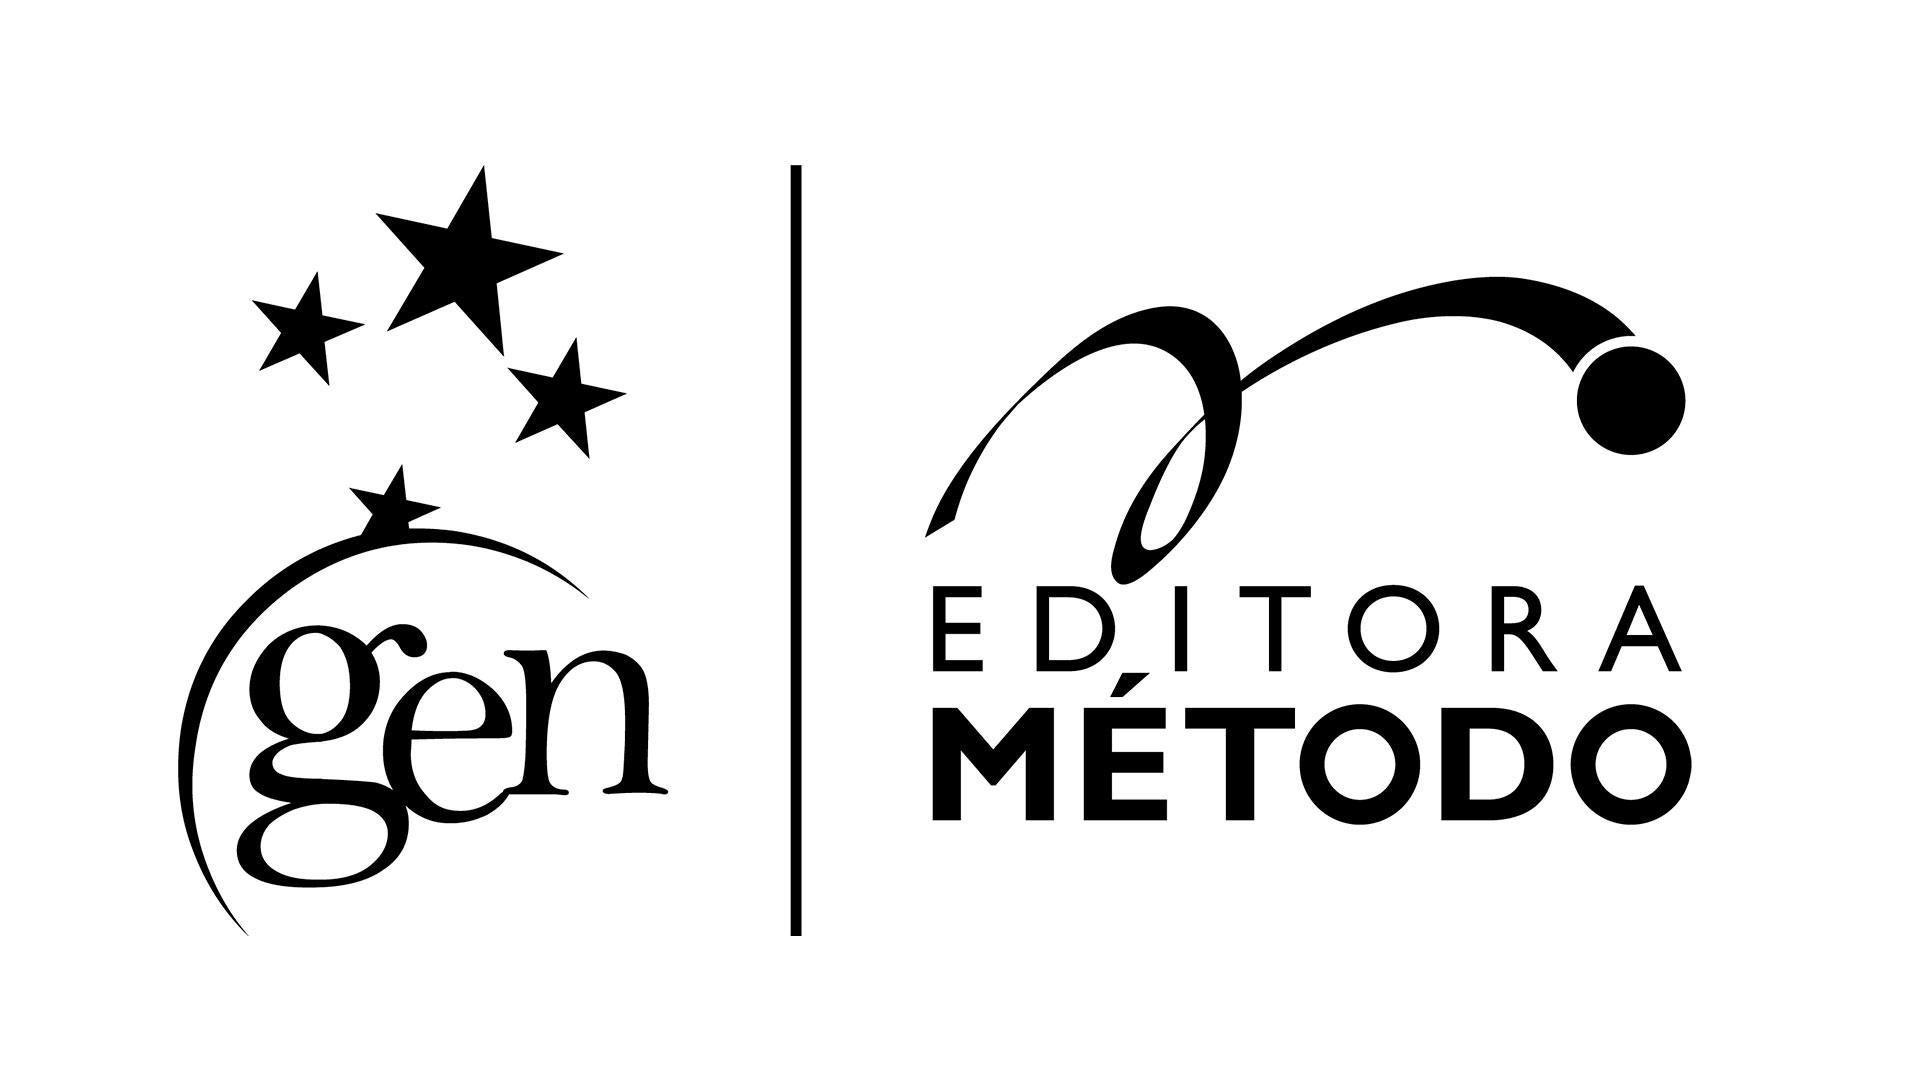 Gen | Editora Método